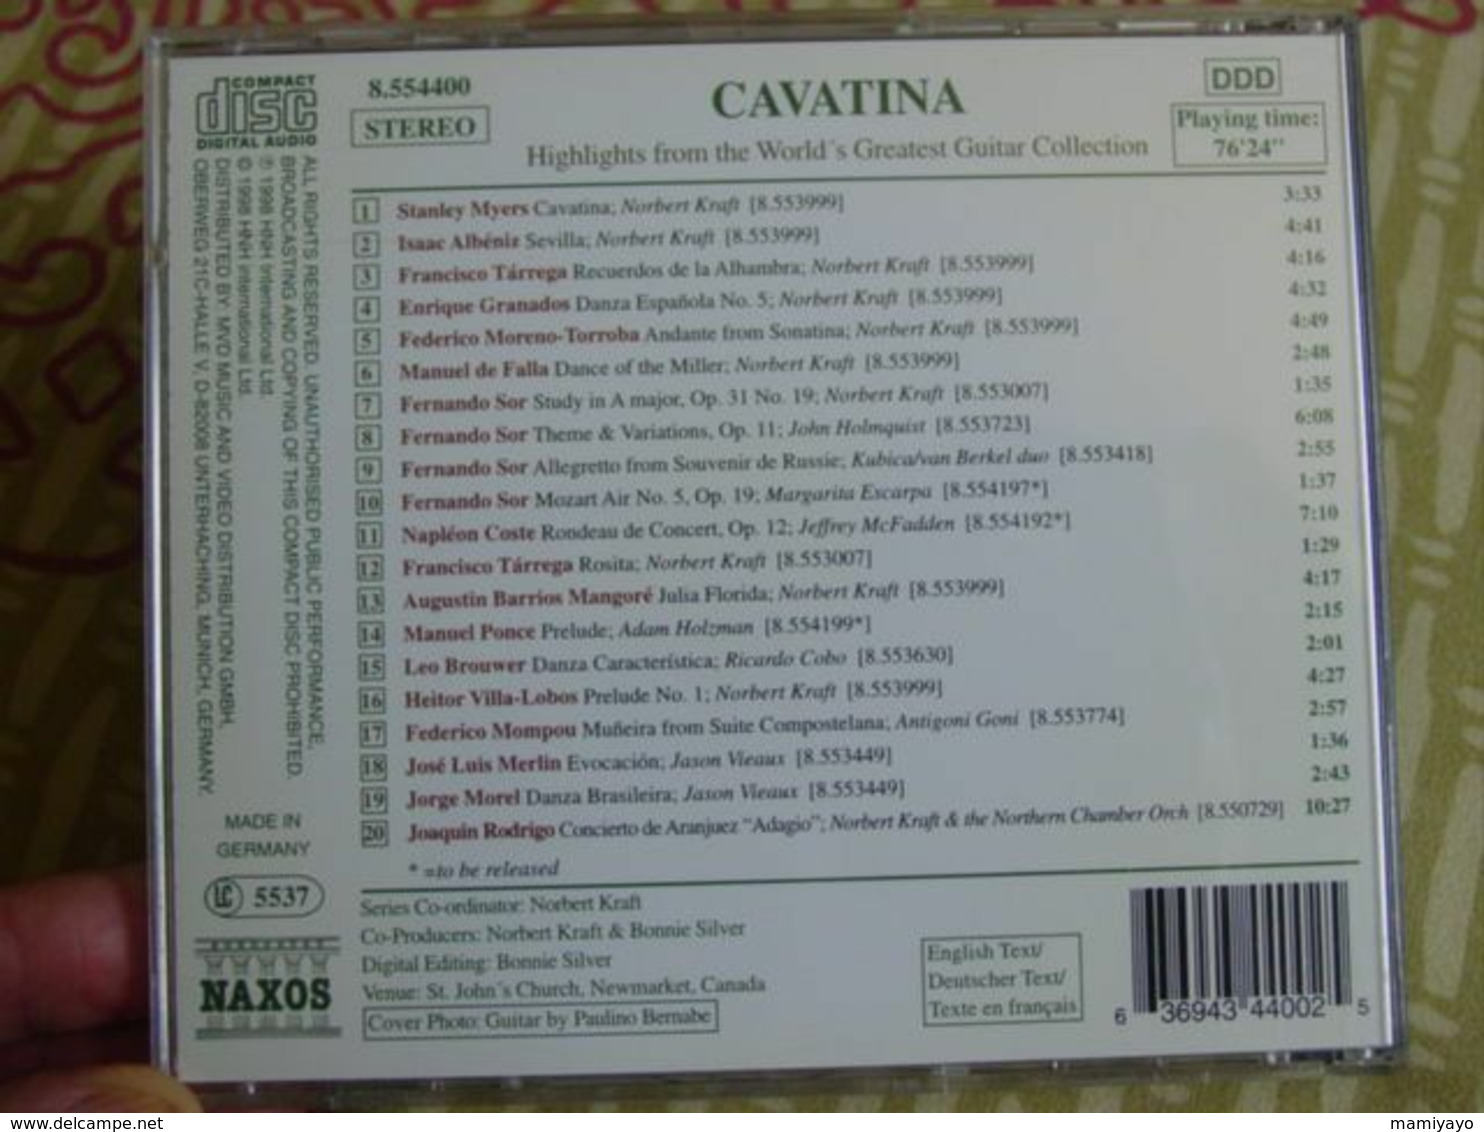 Classique - Guitar Collection * / CAVATINA -Grands Succès De La Guitare . - Strumentali